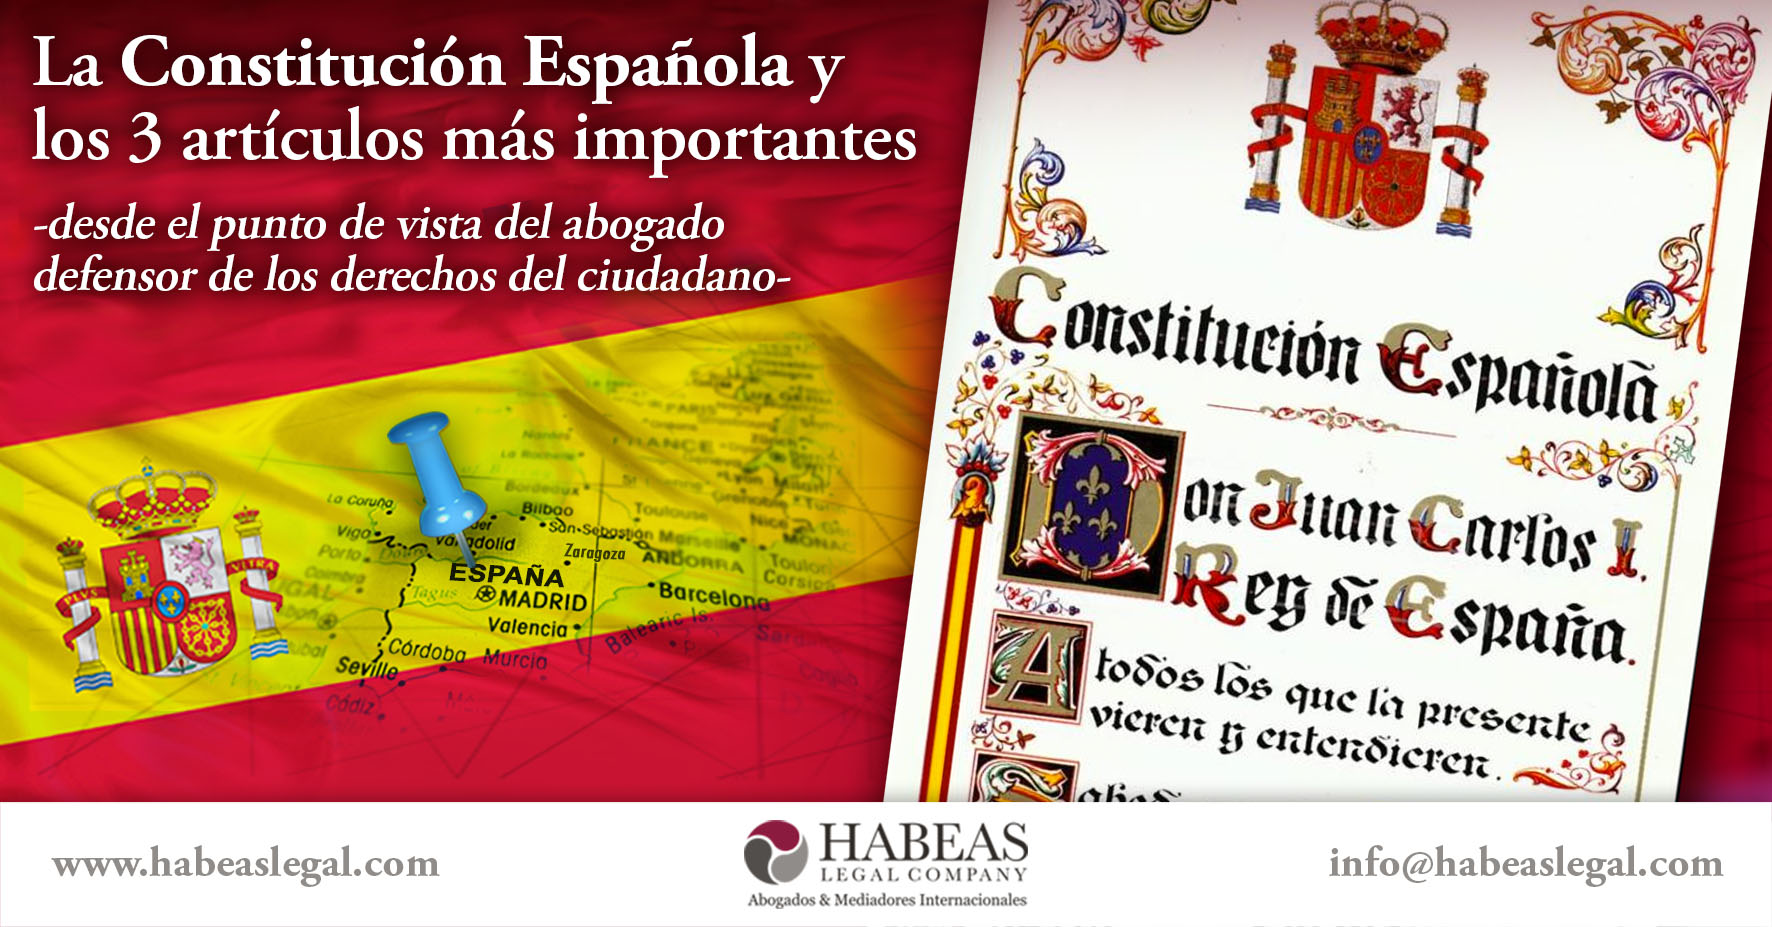 Constitución Española Habeas - La Constitución Española de 1978 y sus 3 artículos más importantes